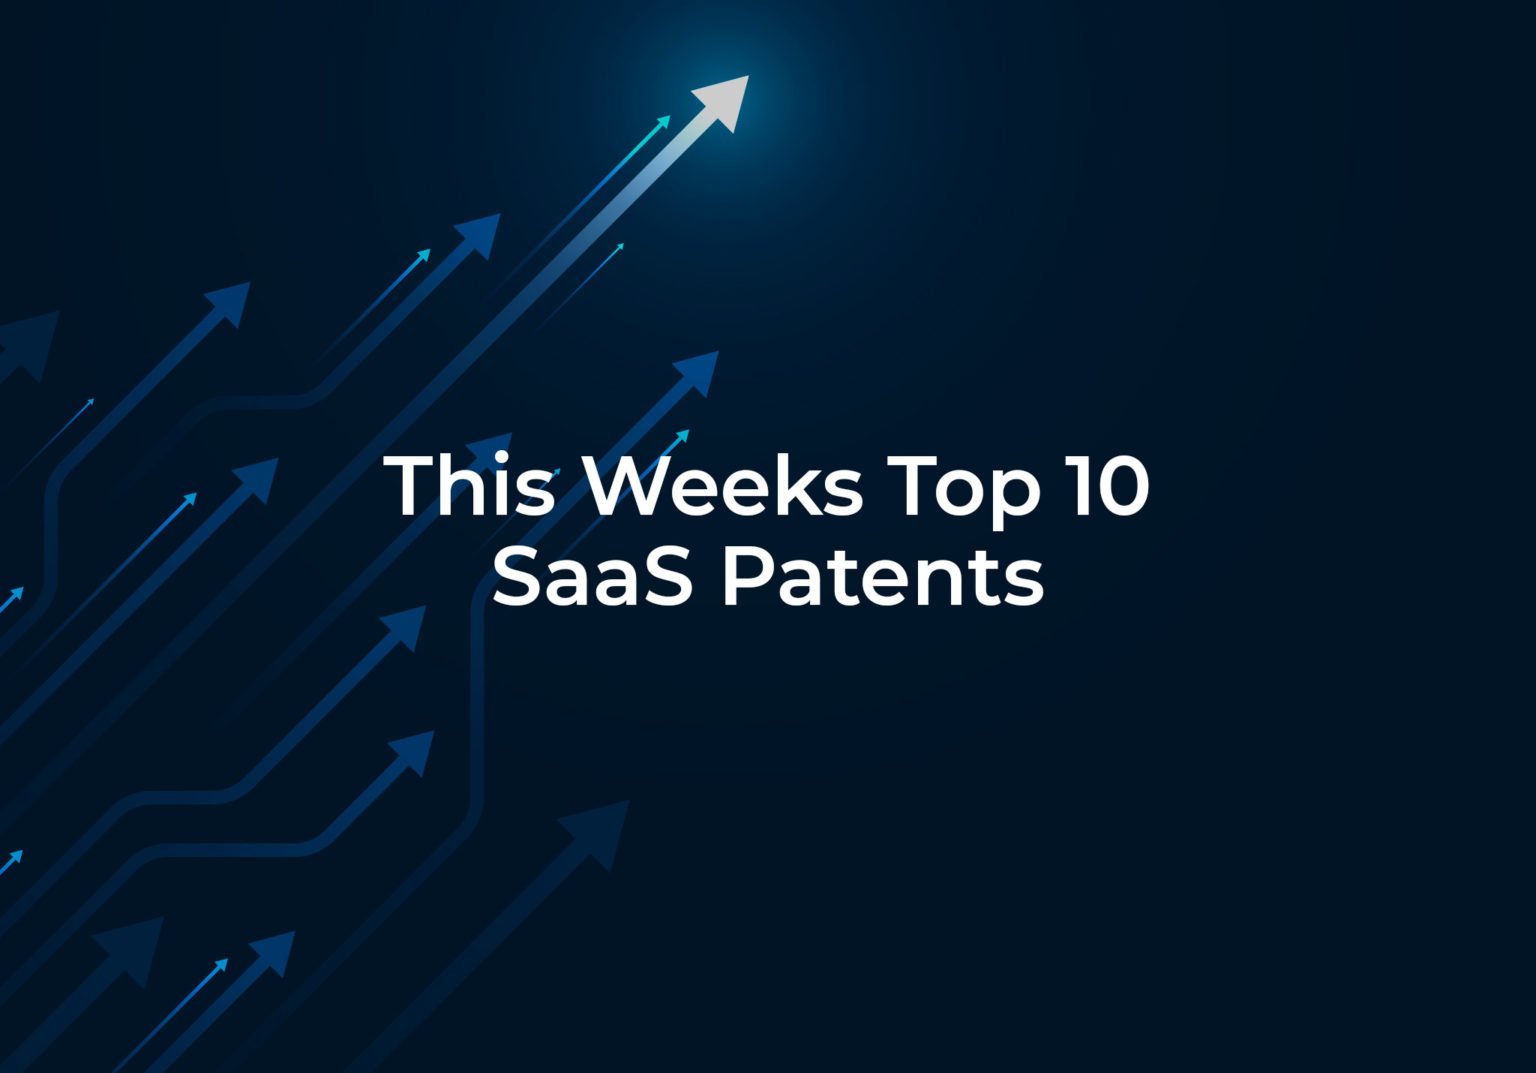 Top 10 SaaS Patents